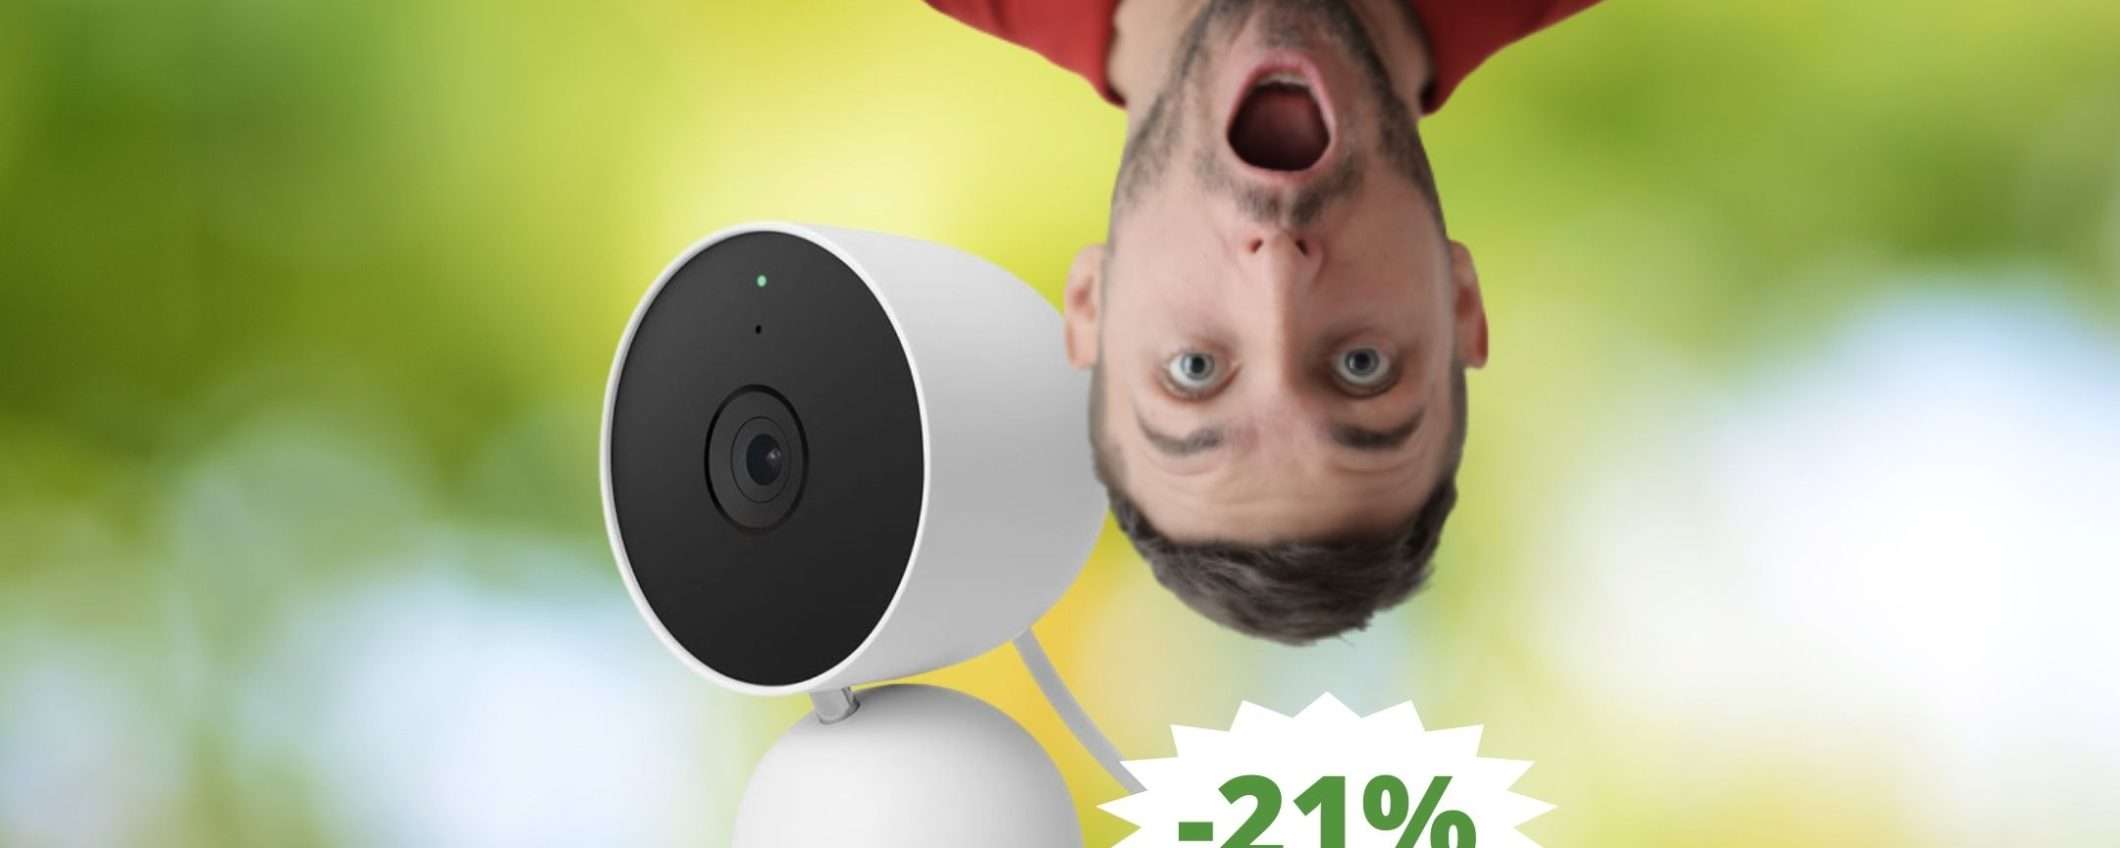 Google Nest Cam: SUPER sconto del 21% su Amazon